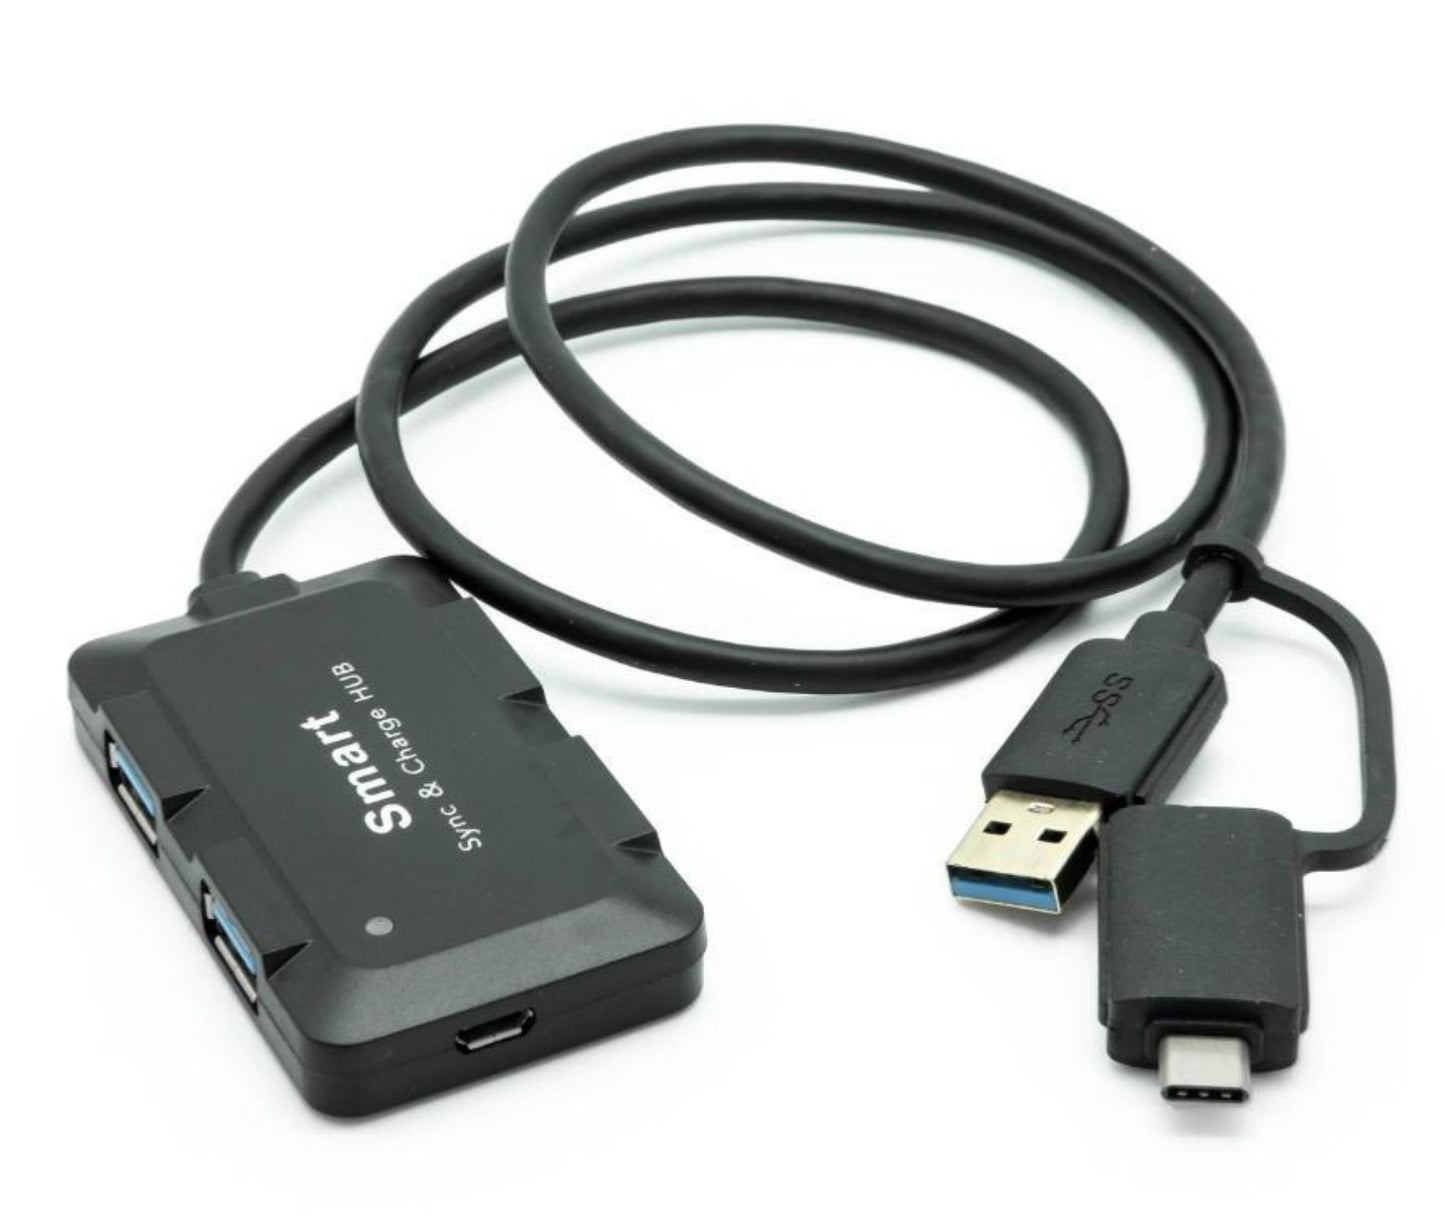 4-port USB3 hub with USB input